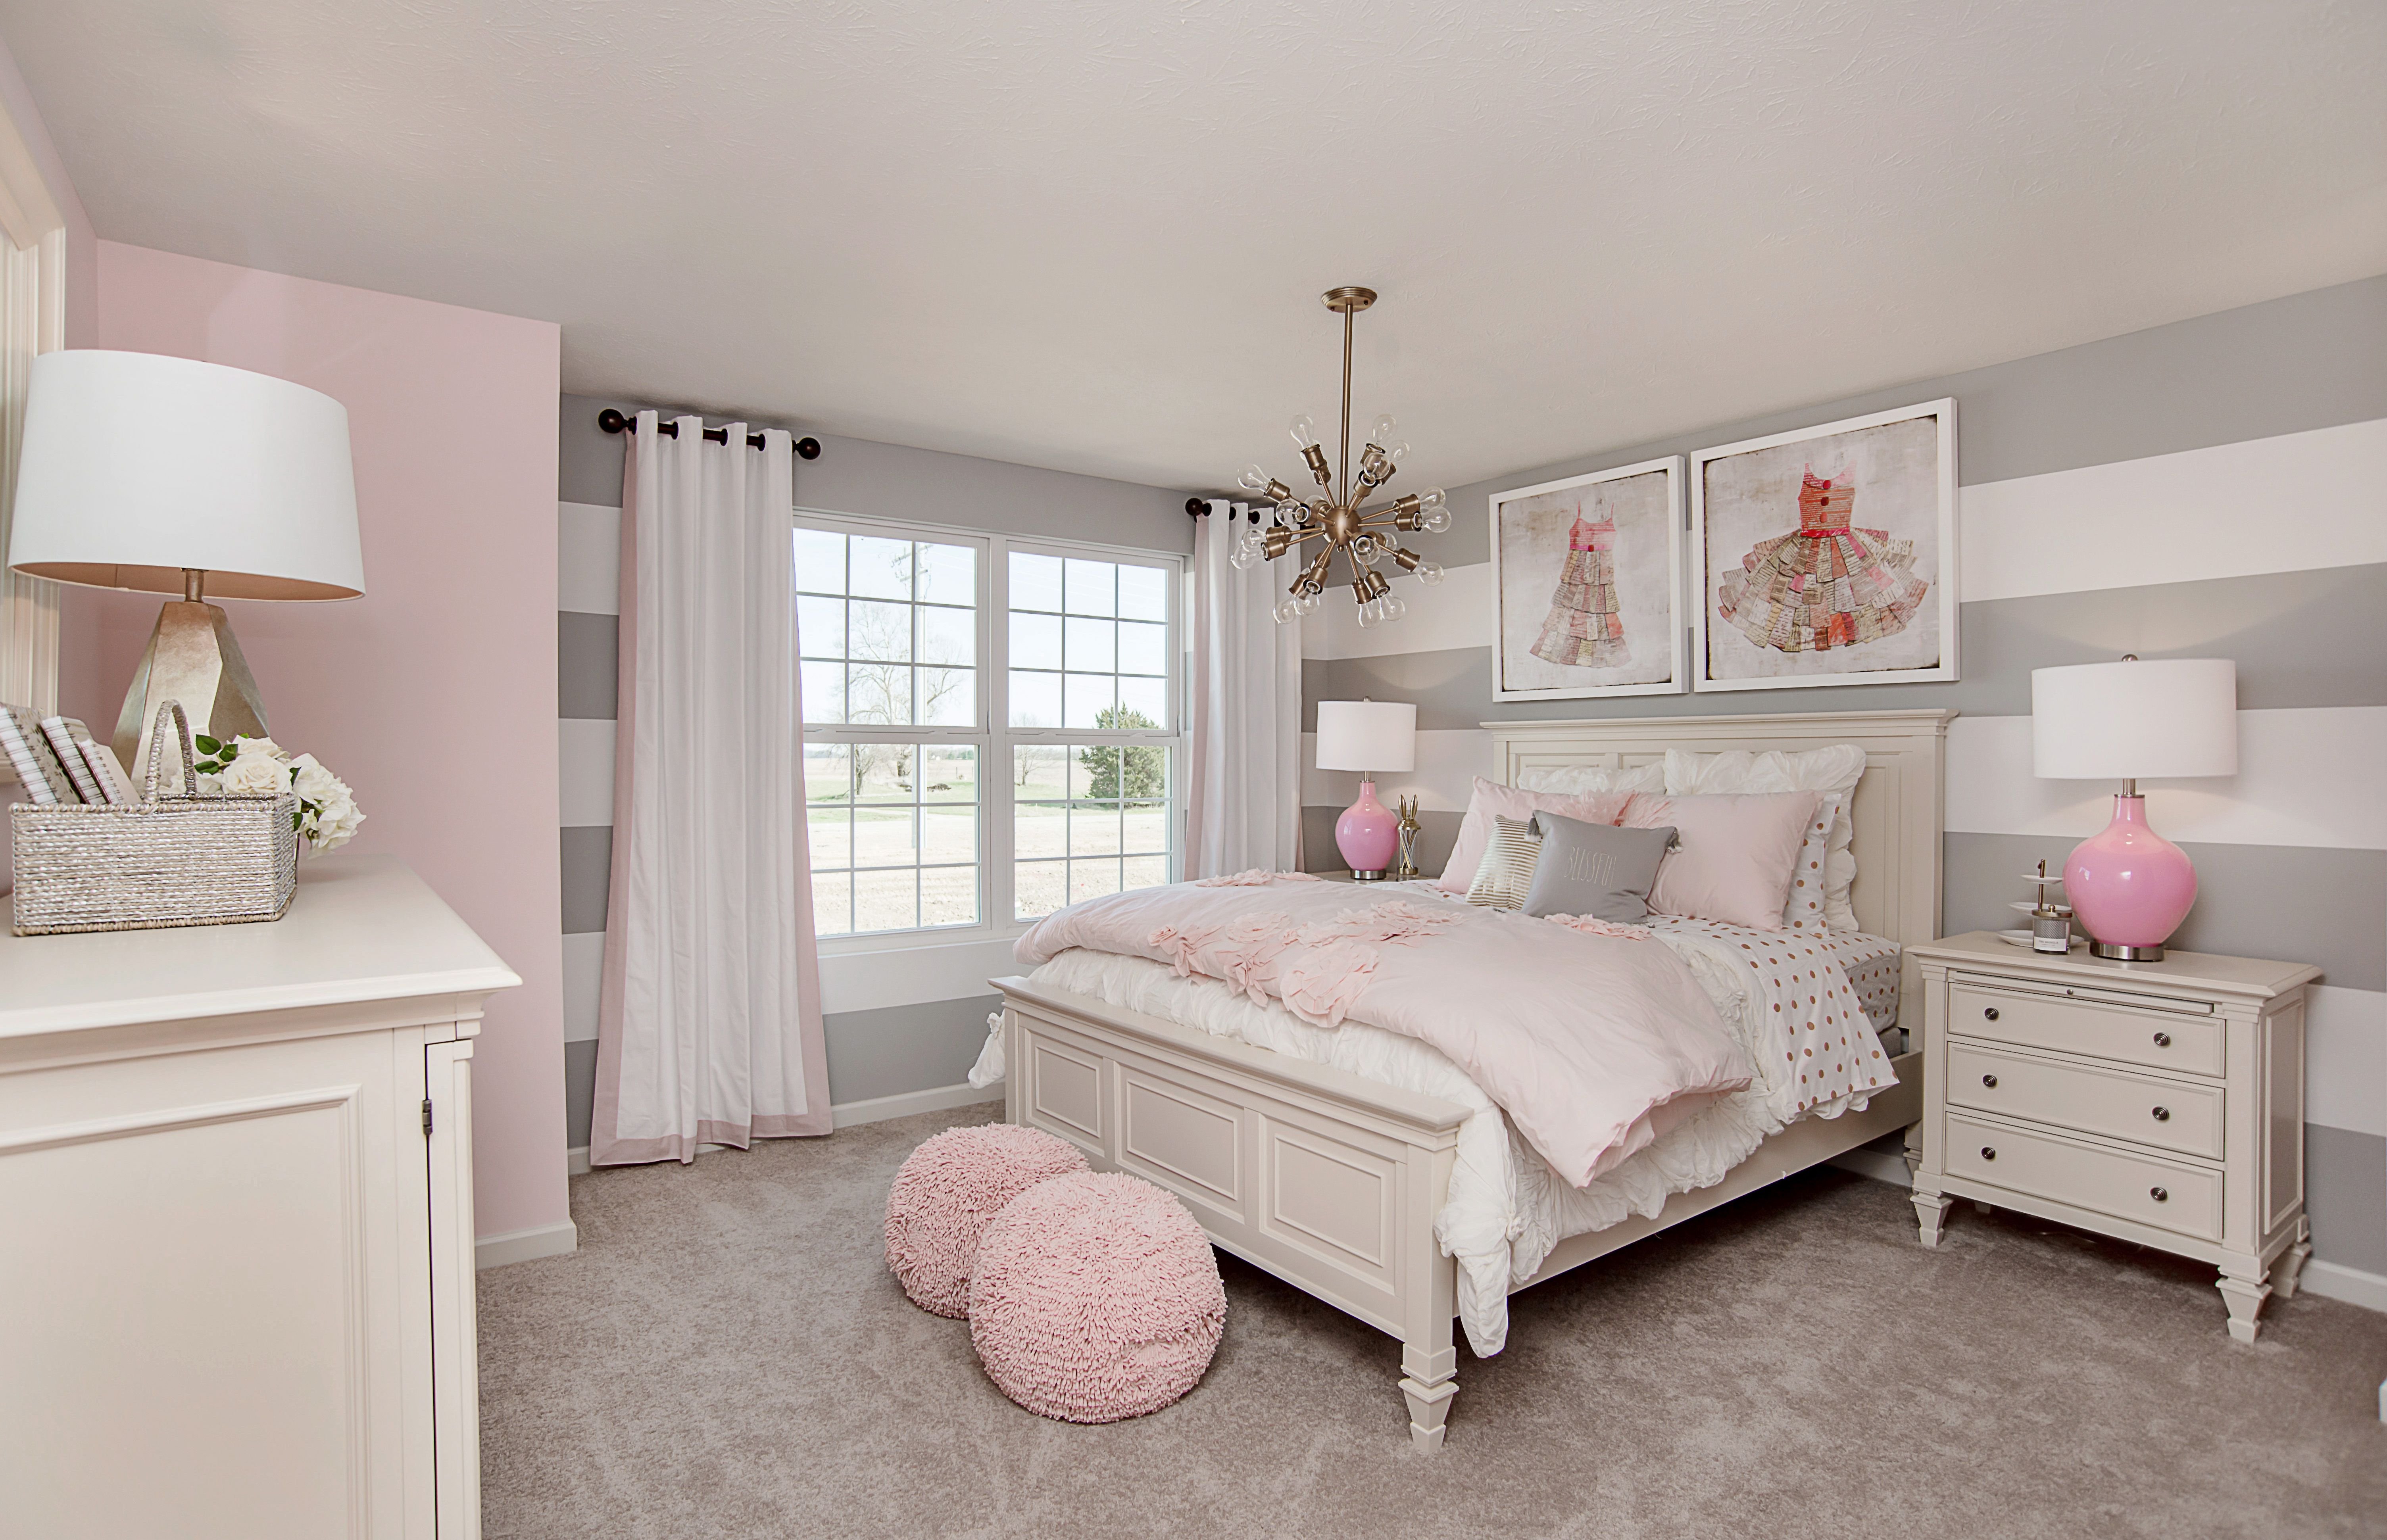 Комната в розовых тонах. Комната для девочки в пастельных тонах. Розовая спальня. Розовая детская комната. Спальня в пастельных тонах.